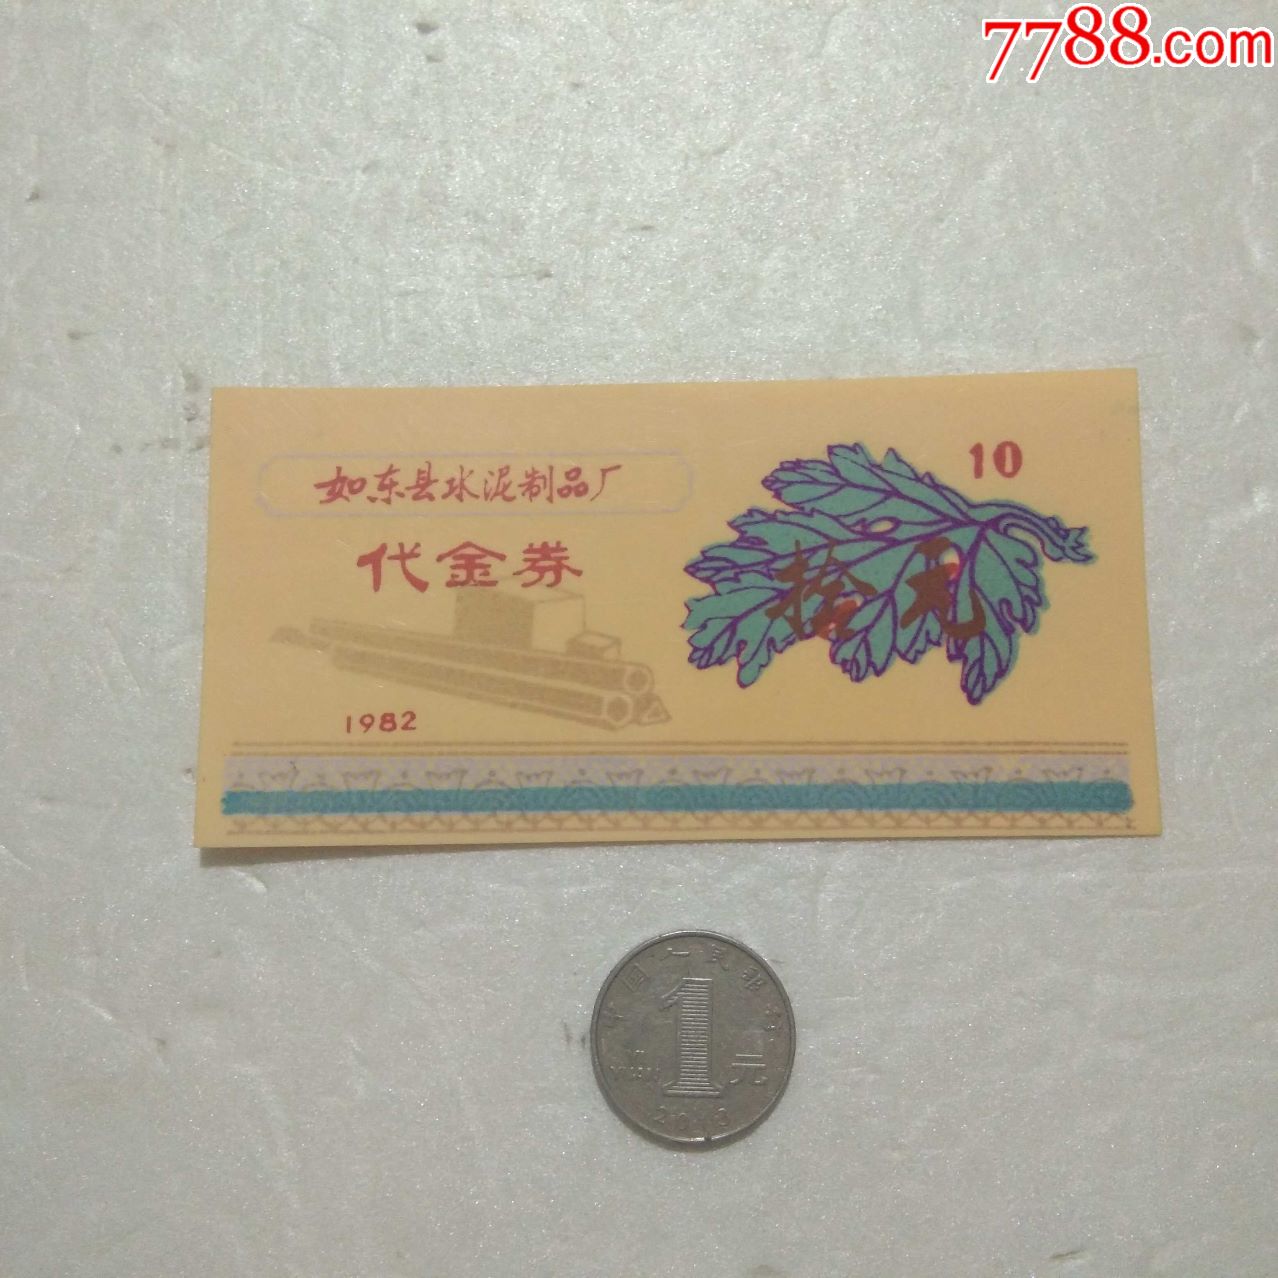 塑料代金券:如东县水泥制品厂(十元)1982年